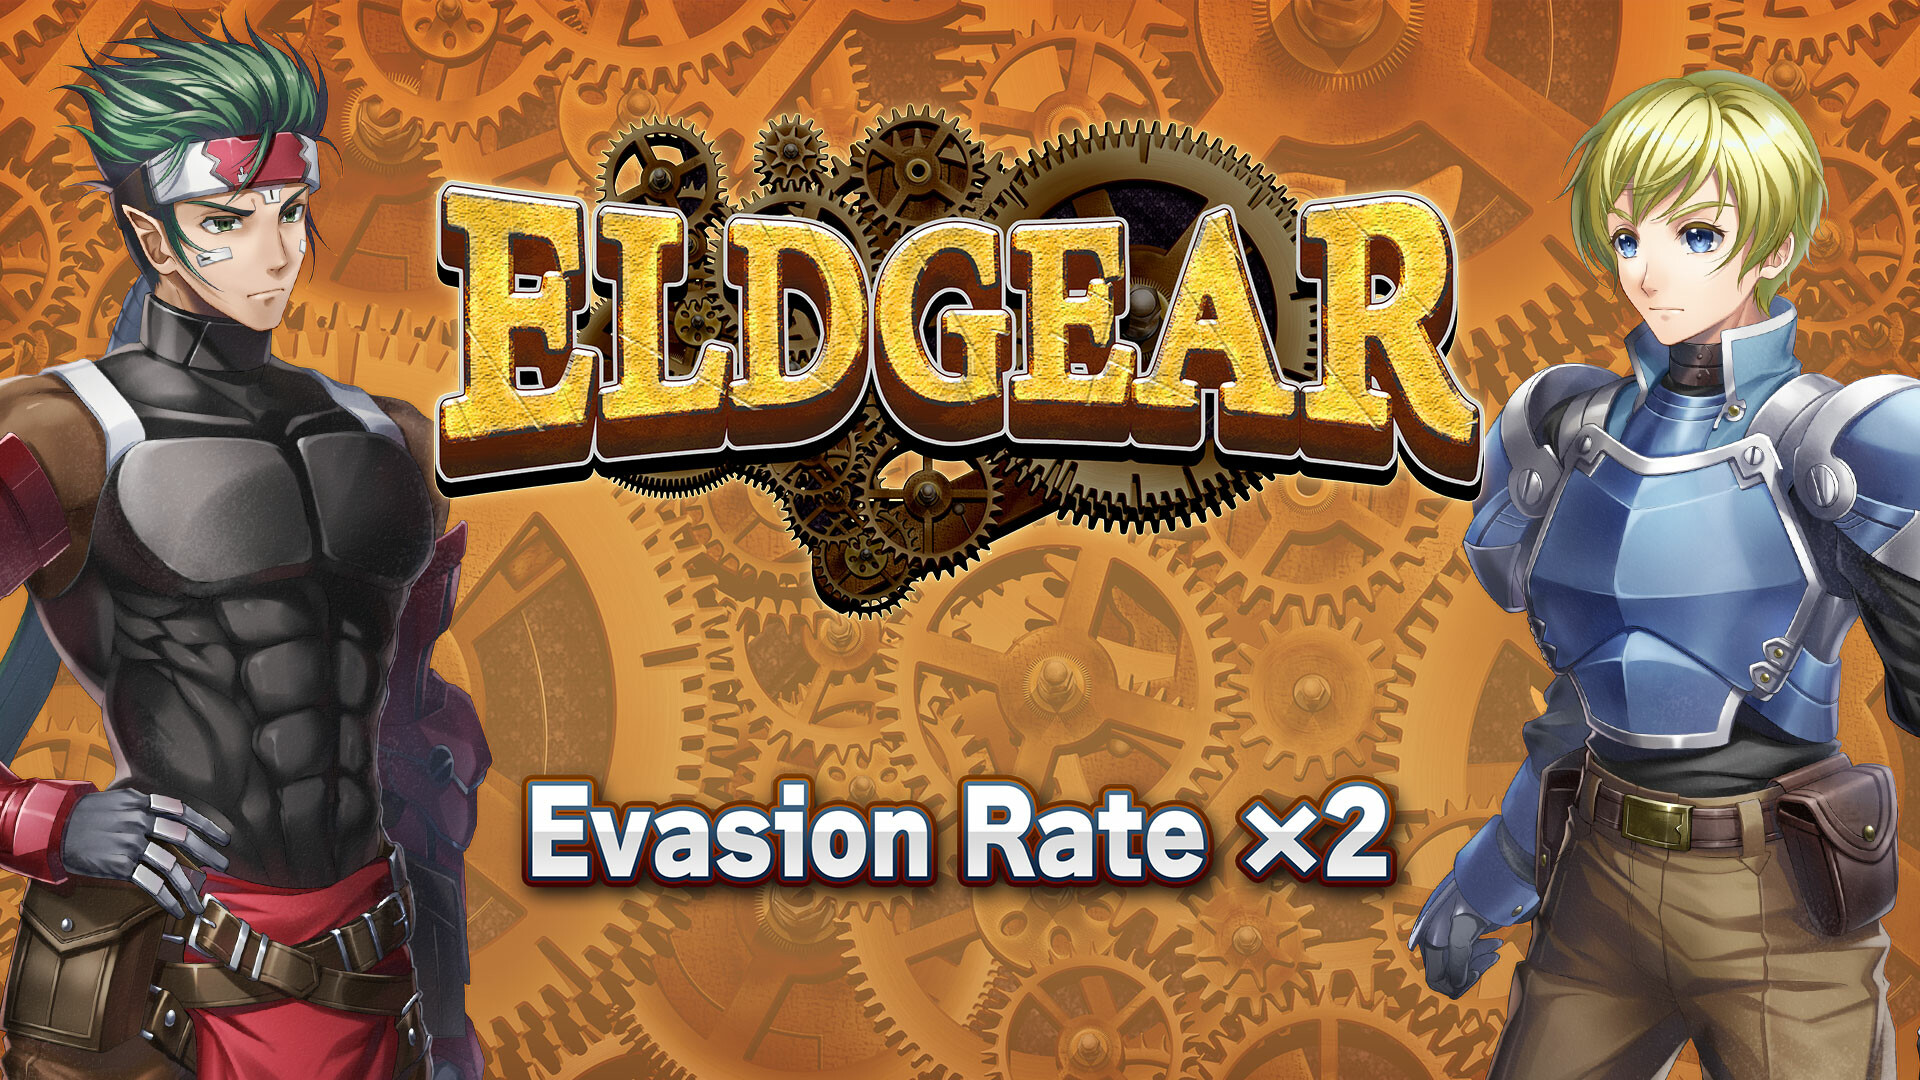 Evasion Rate x2 - Eldgear Featured Screenshot #1